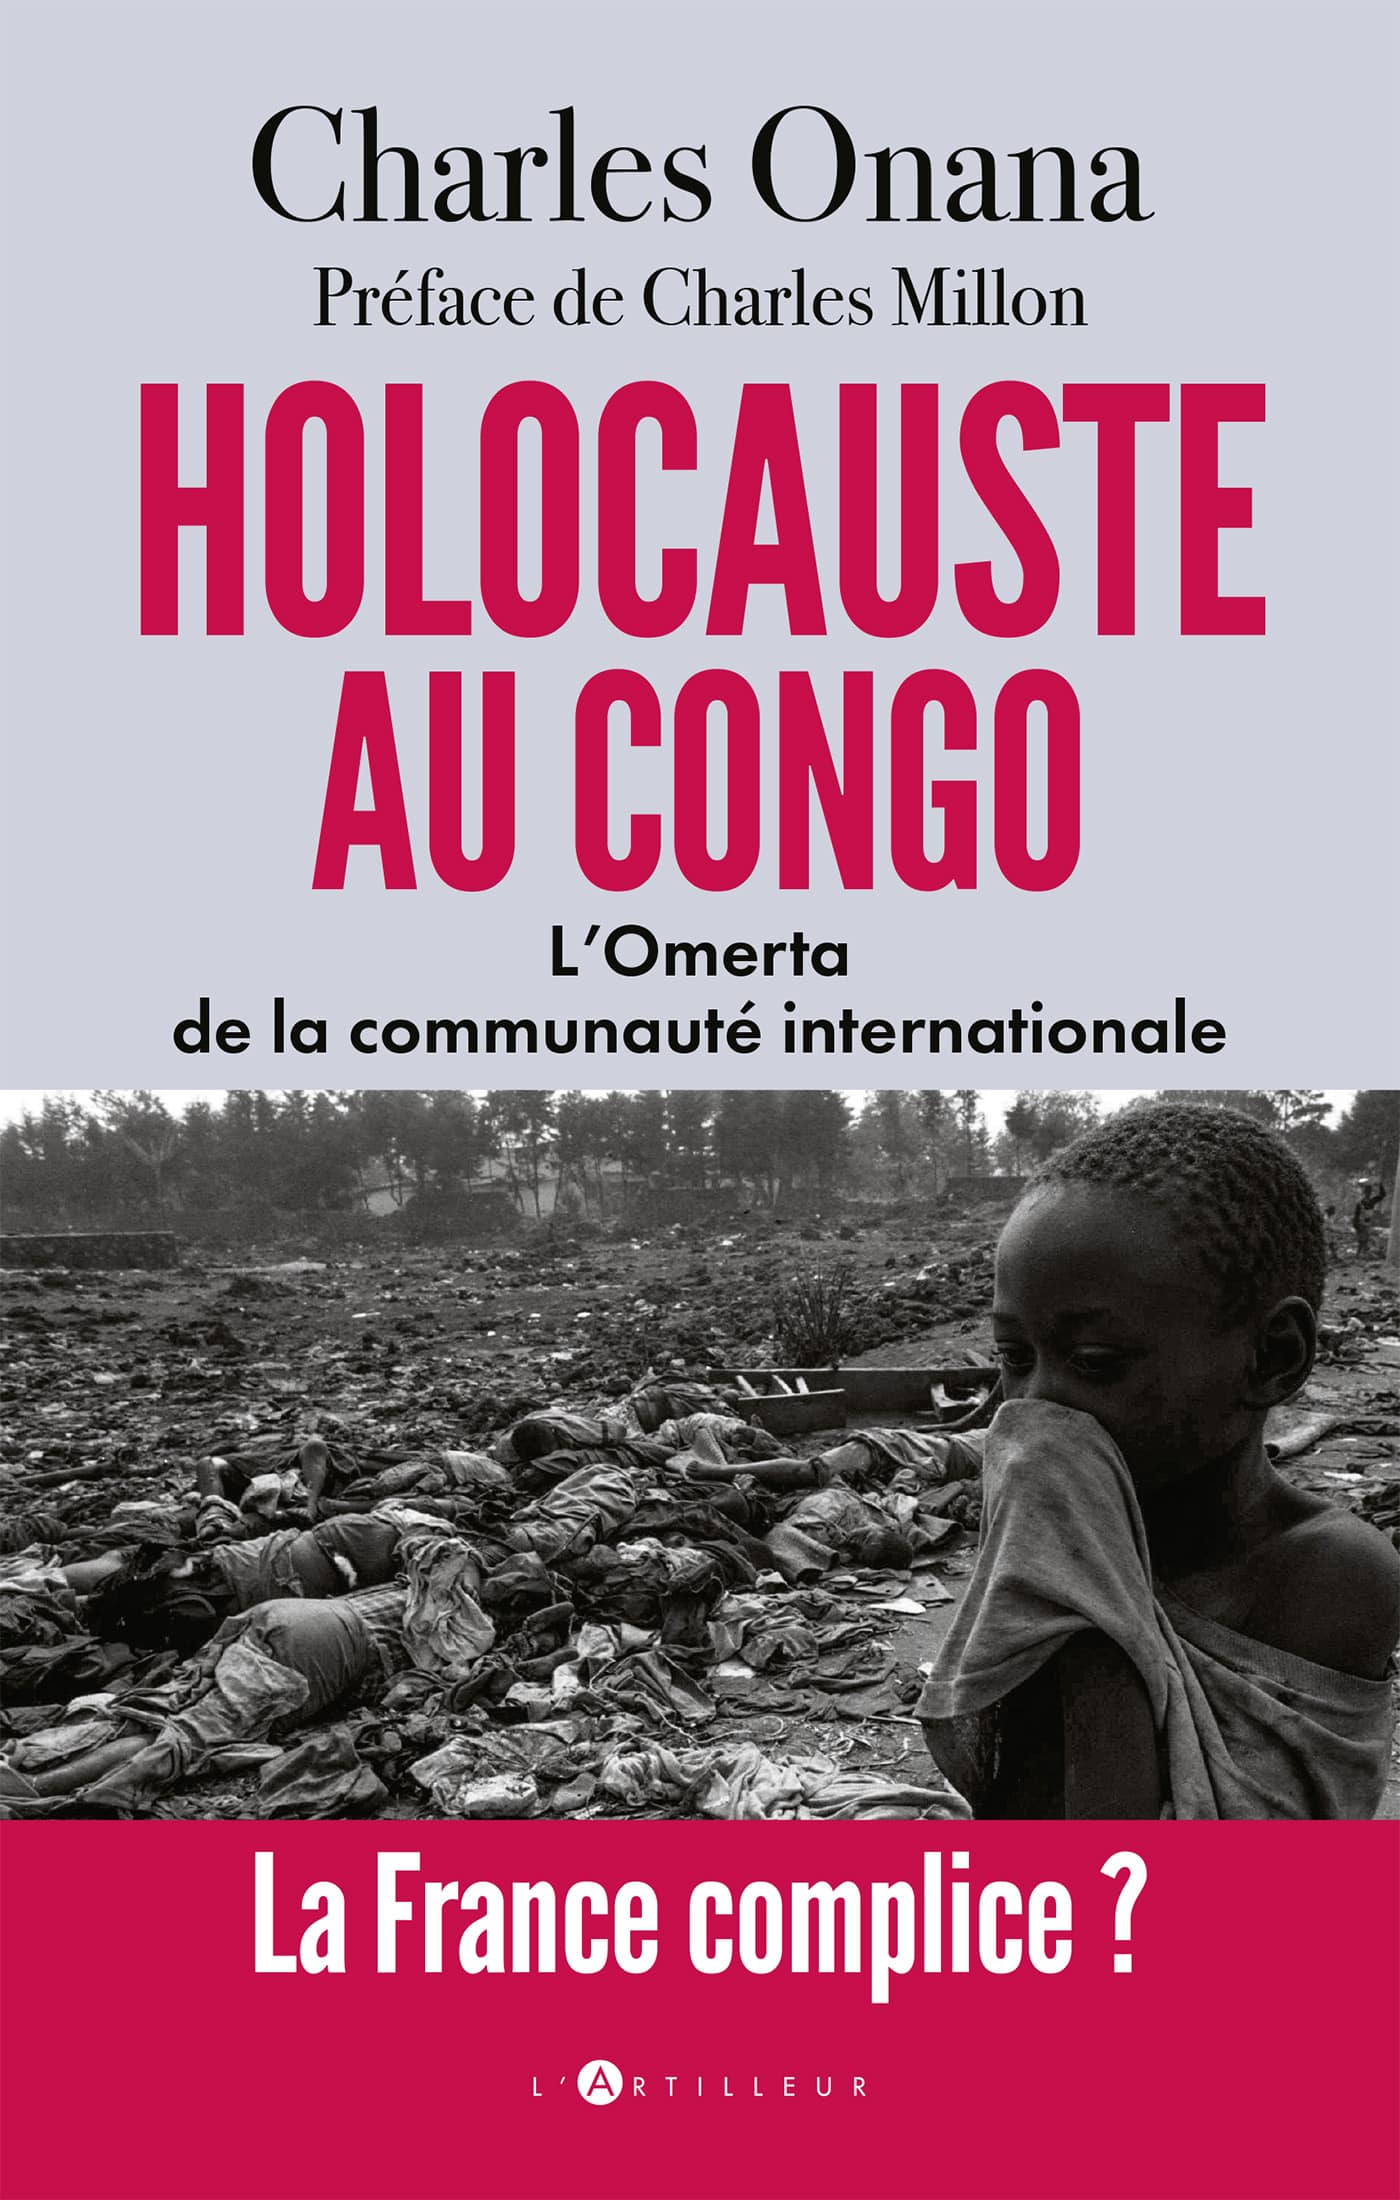 Holocauste au Congo”, le livre choc sur l'effroyable réalité de la